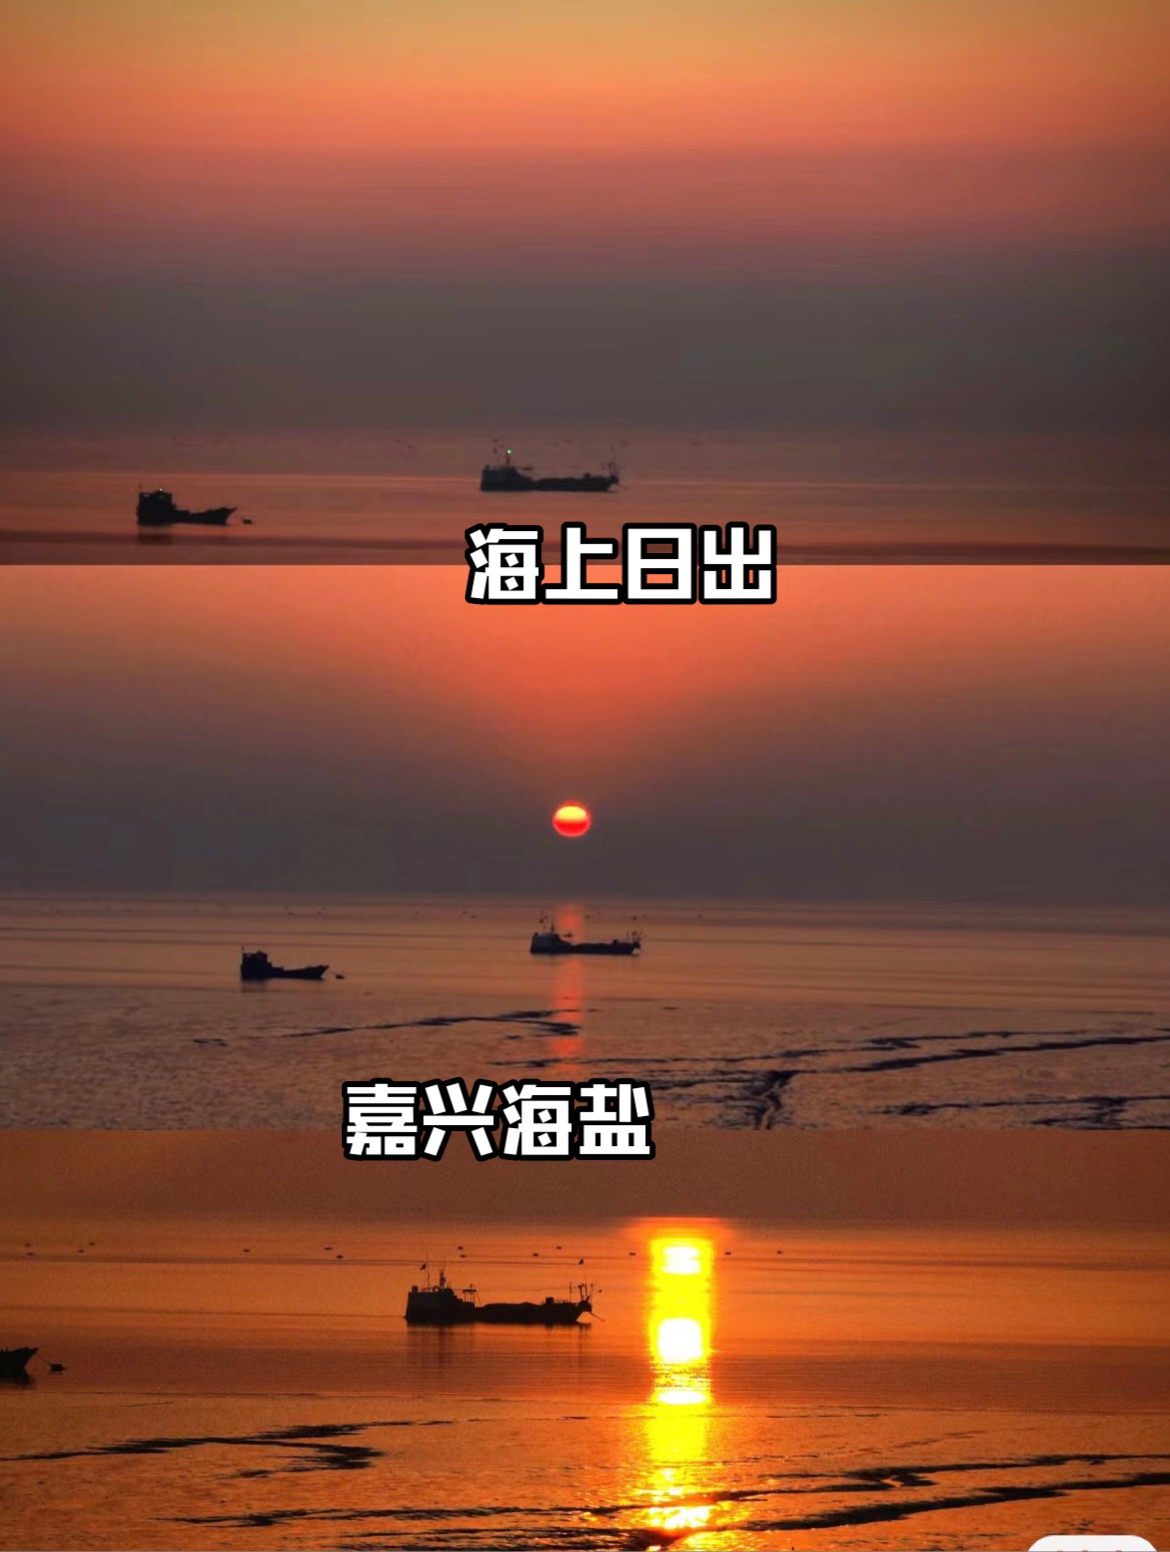 我从来没想过，能在杭州附近看到海上日出！ #总要看一场海上日出吧 #落日下的橘子海 #嘉兴海盐